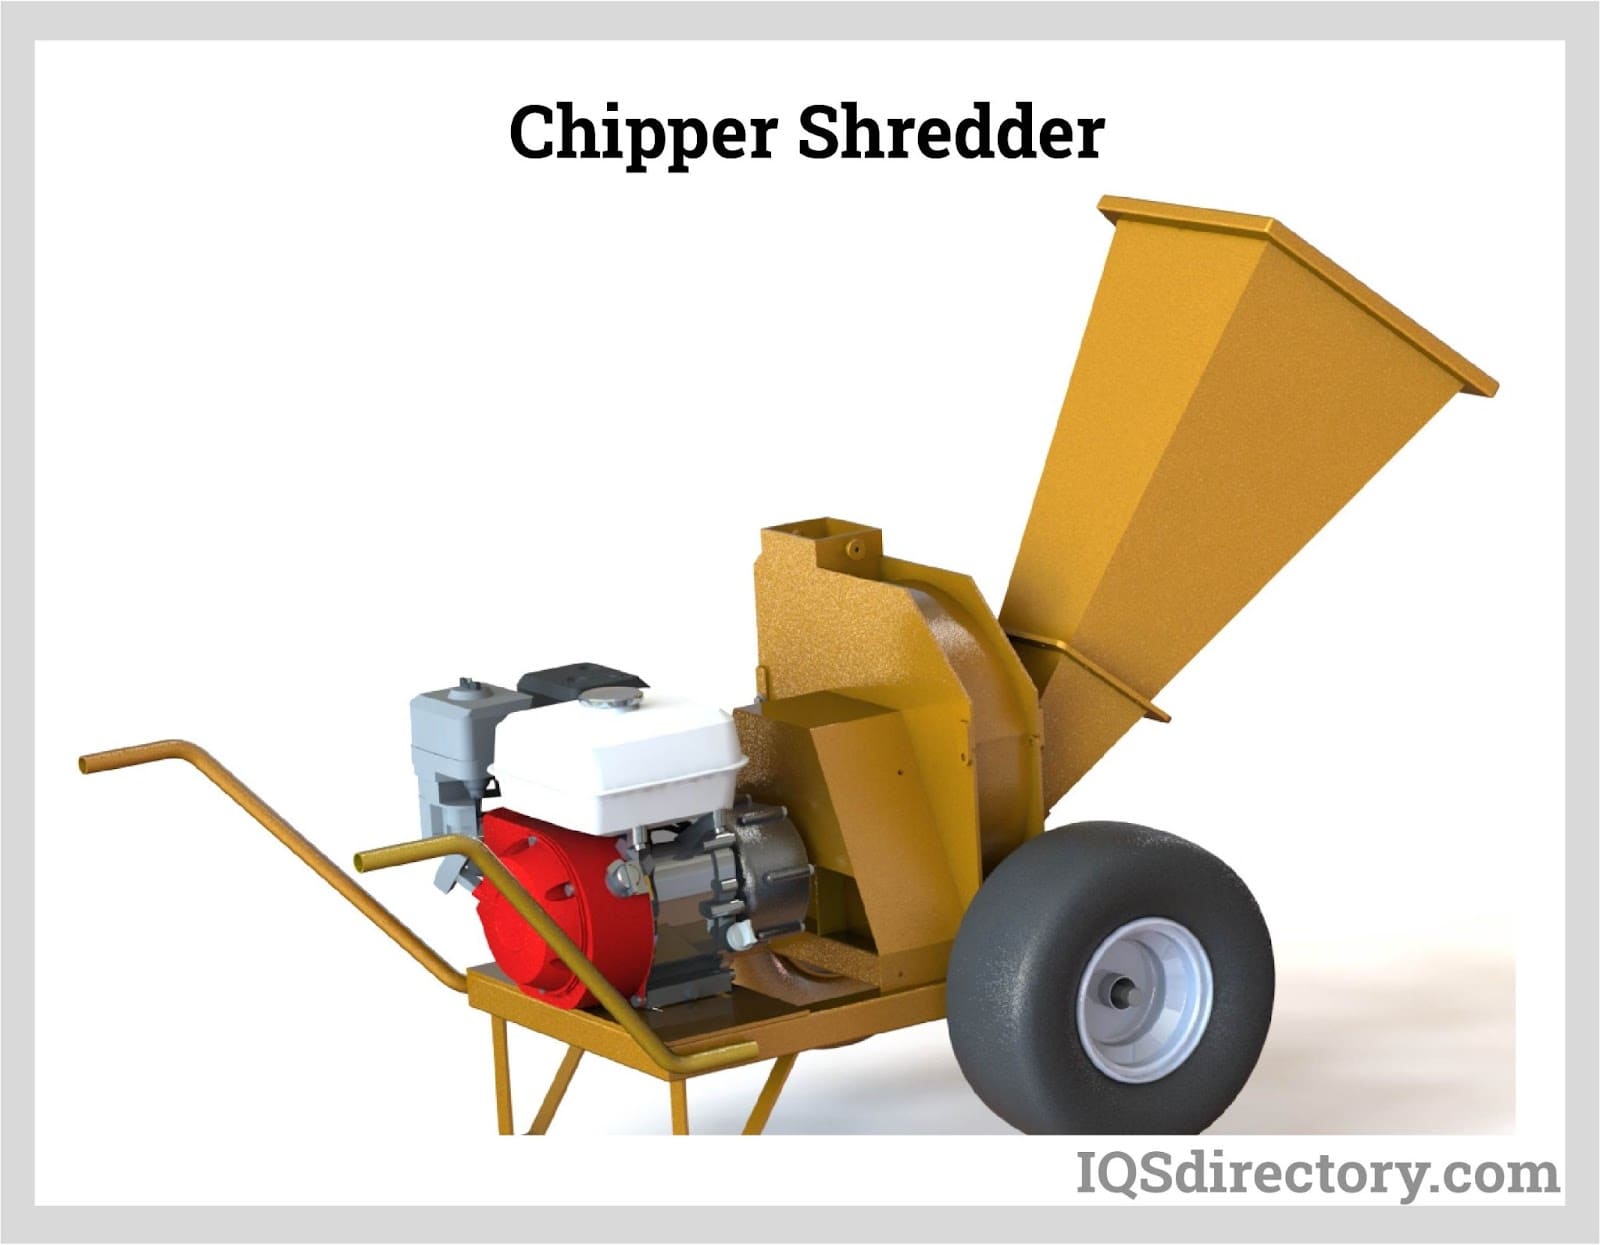 Chipper Shredder